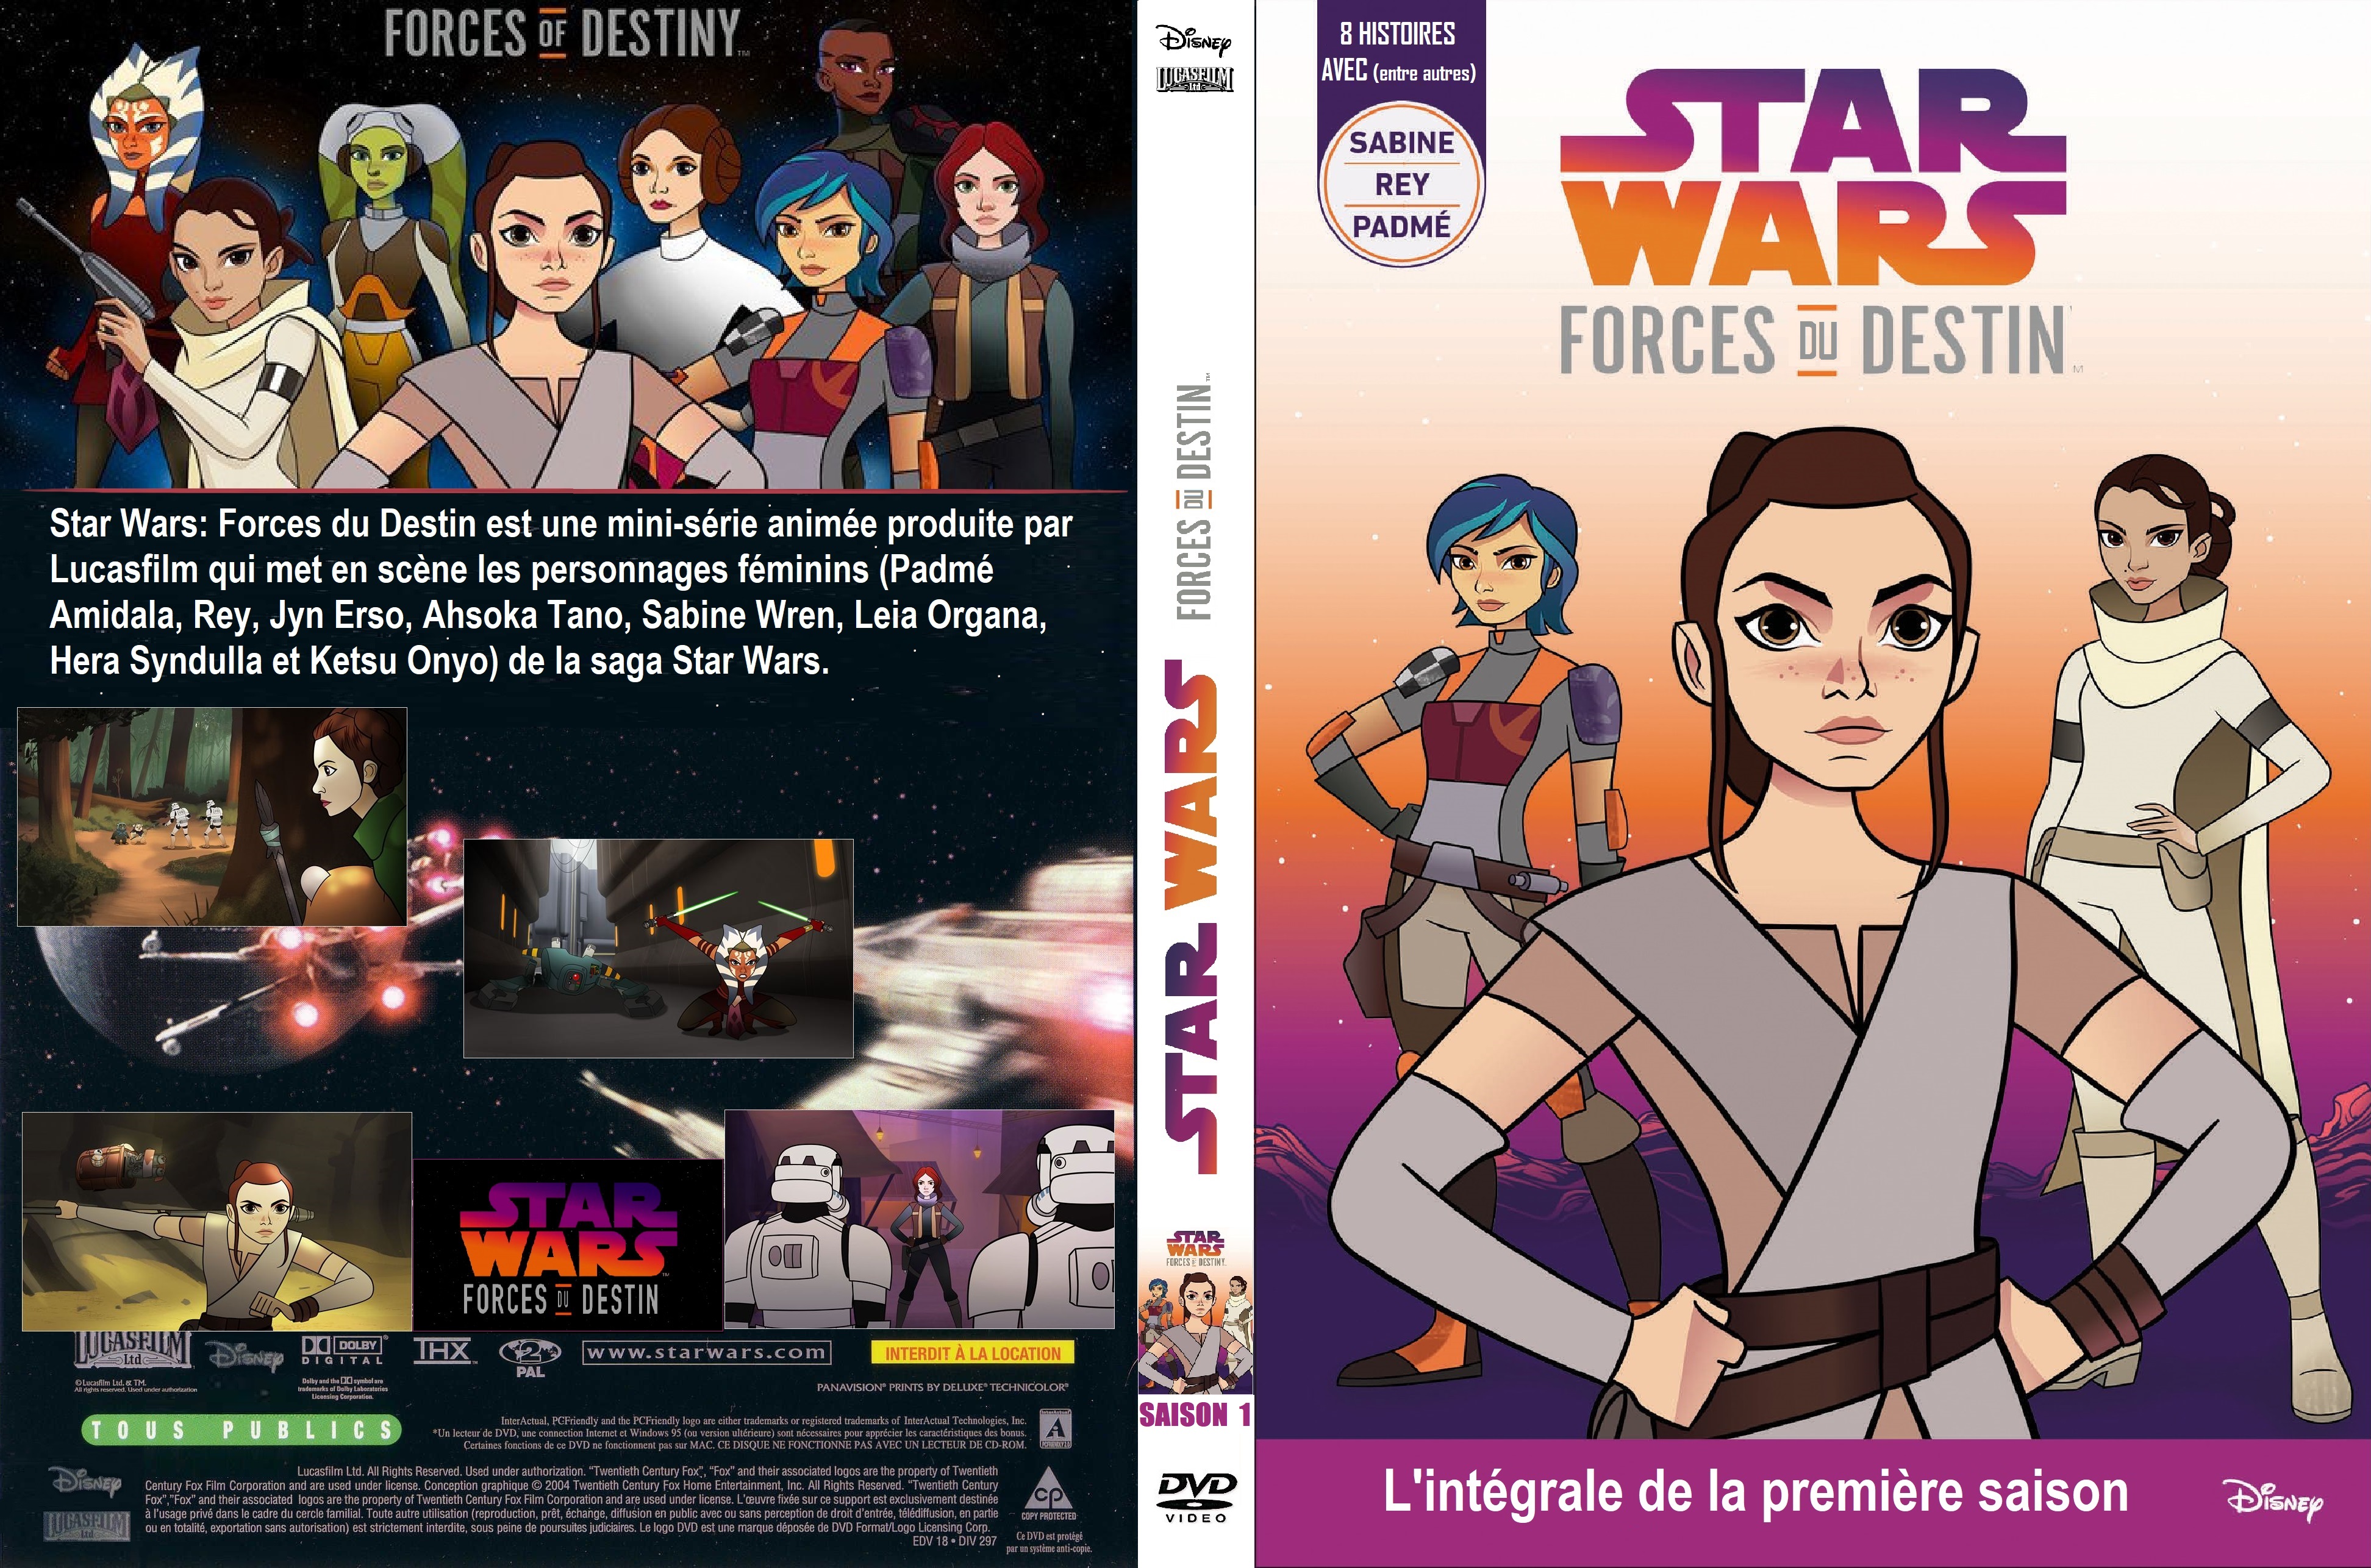 Jaquette DVD Star Wars Forces du Destin saison 1 custom